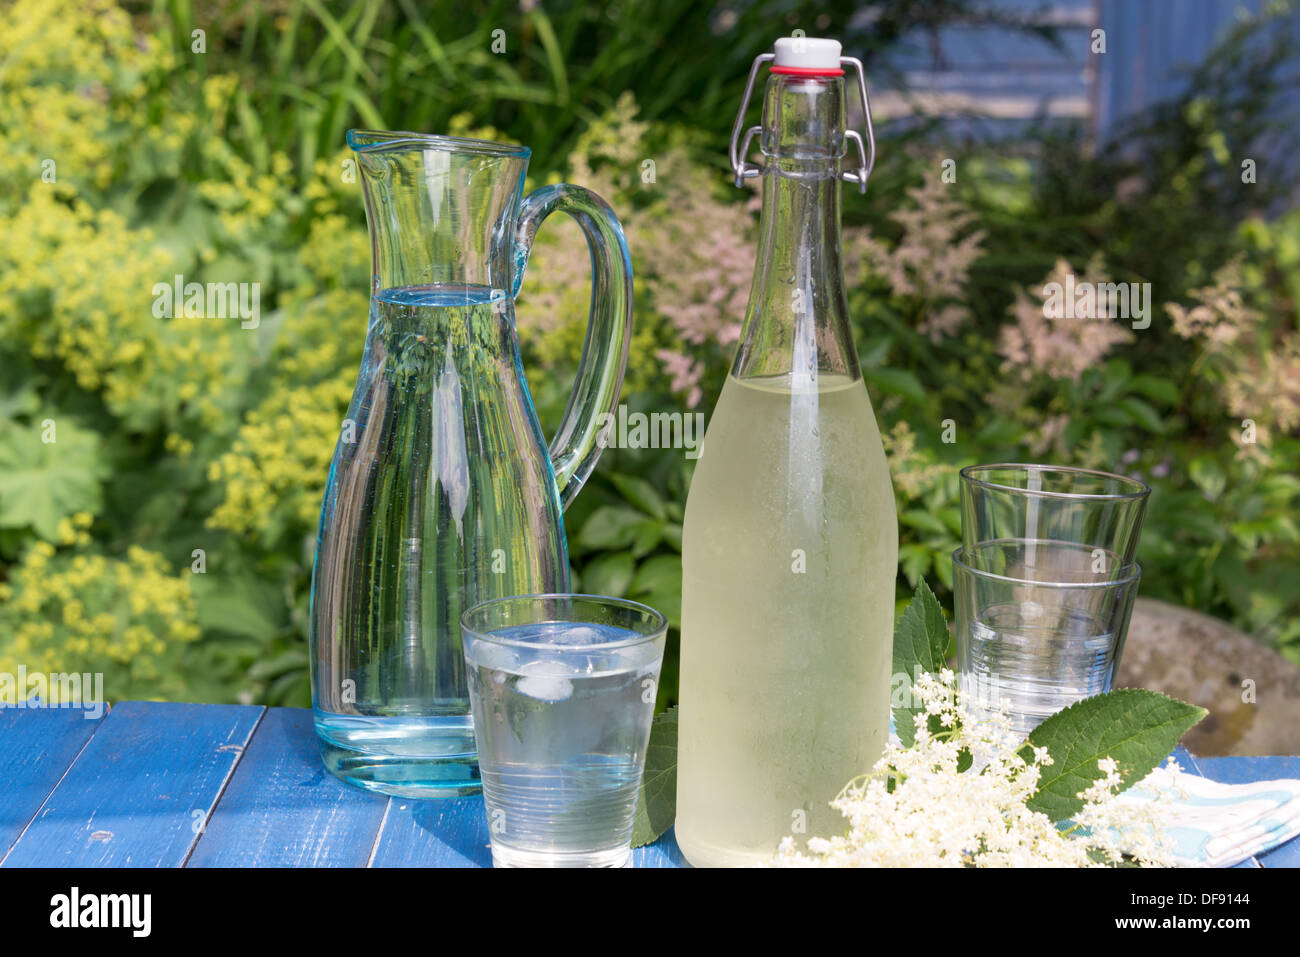 Elderflower caseros cordial en un día de verano. En el Reino Unido. Foto de stock